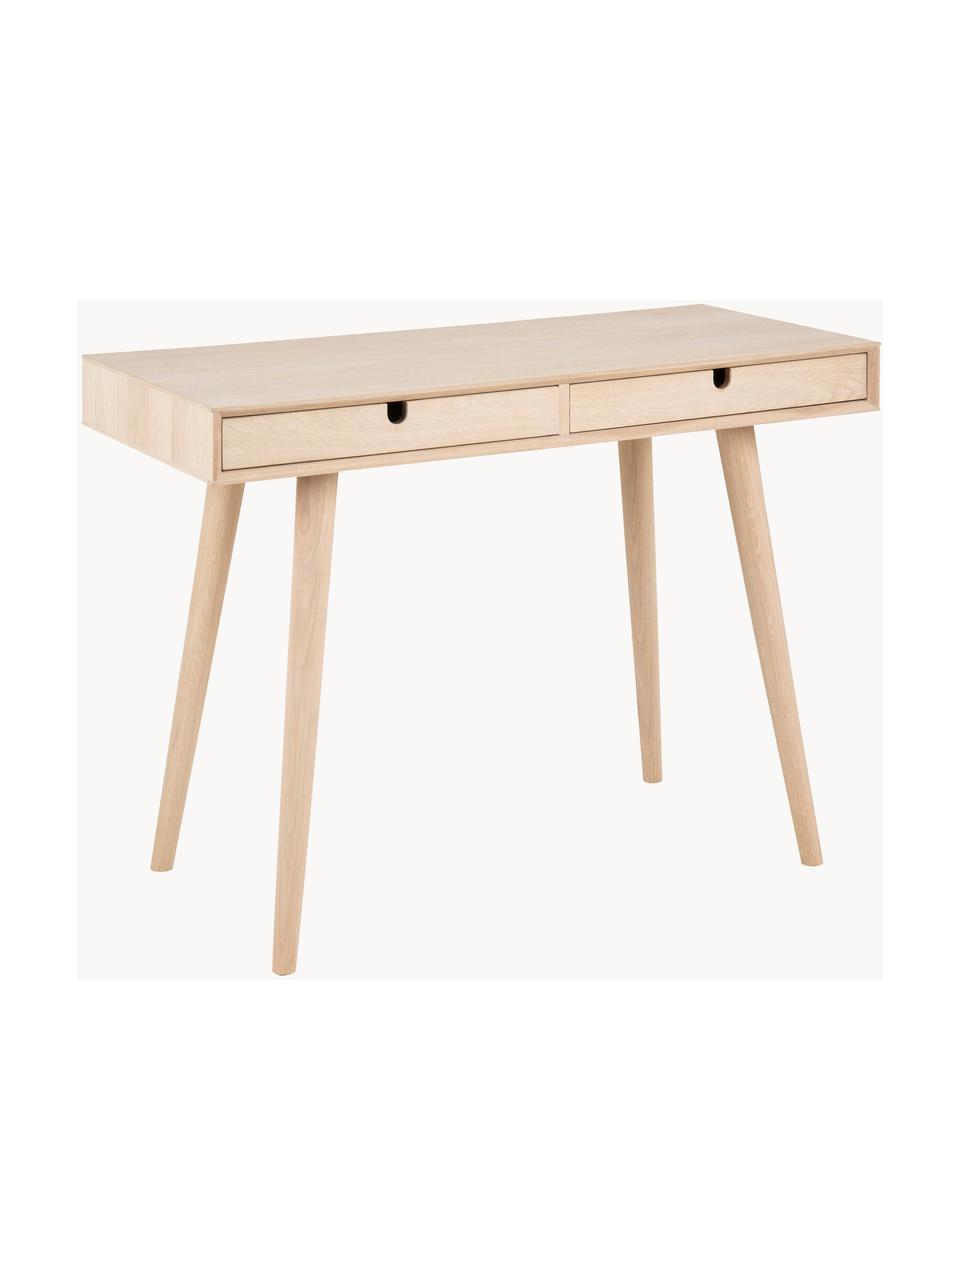 Wąskie biurko z drewna dębowego Century, Nogi: drewno dębowe, bielone, Drewno dębowe, 100 x 74 cm